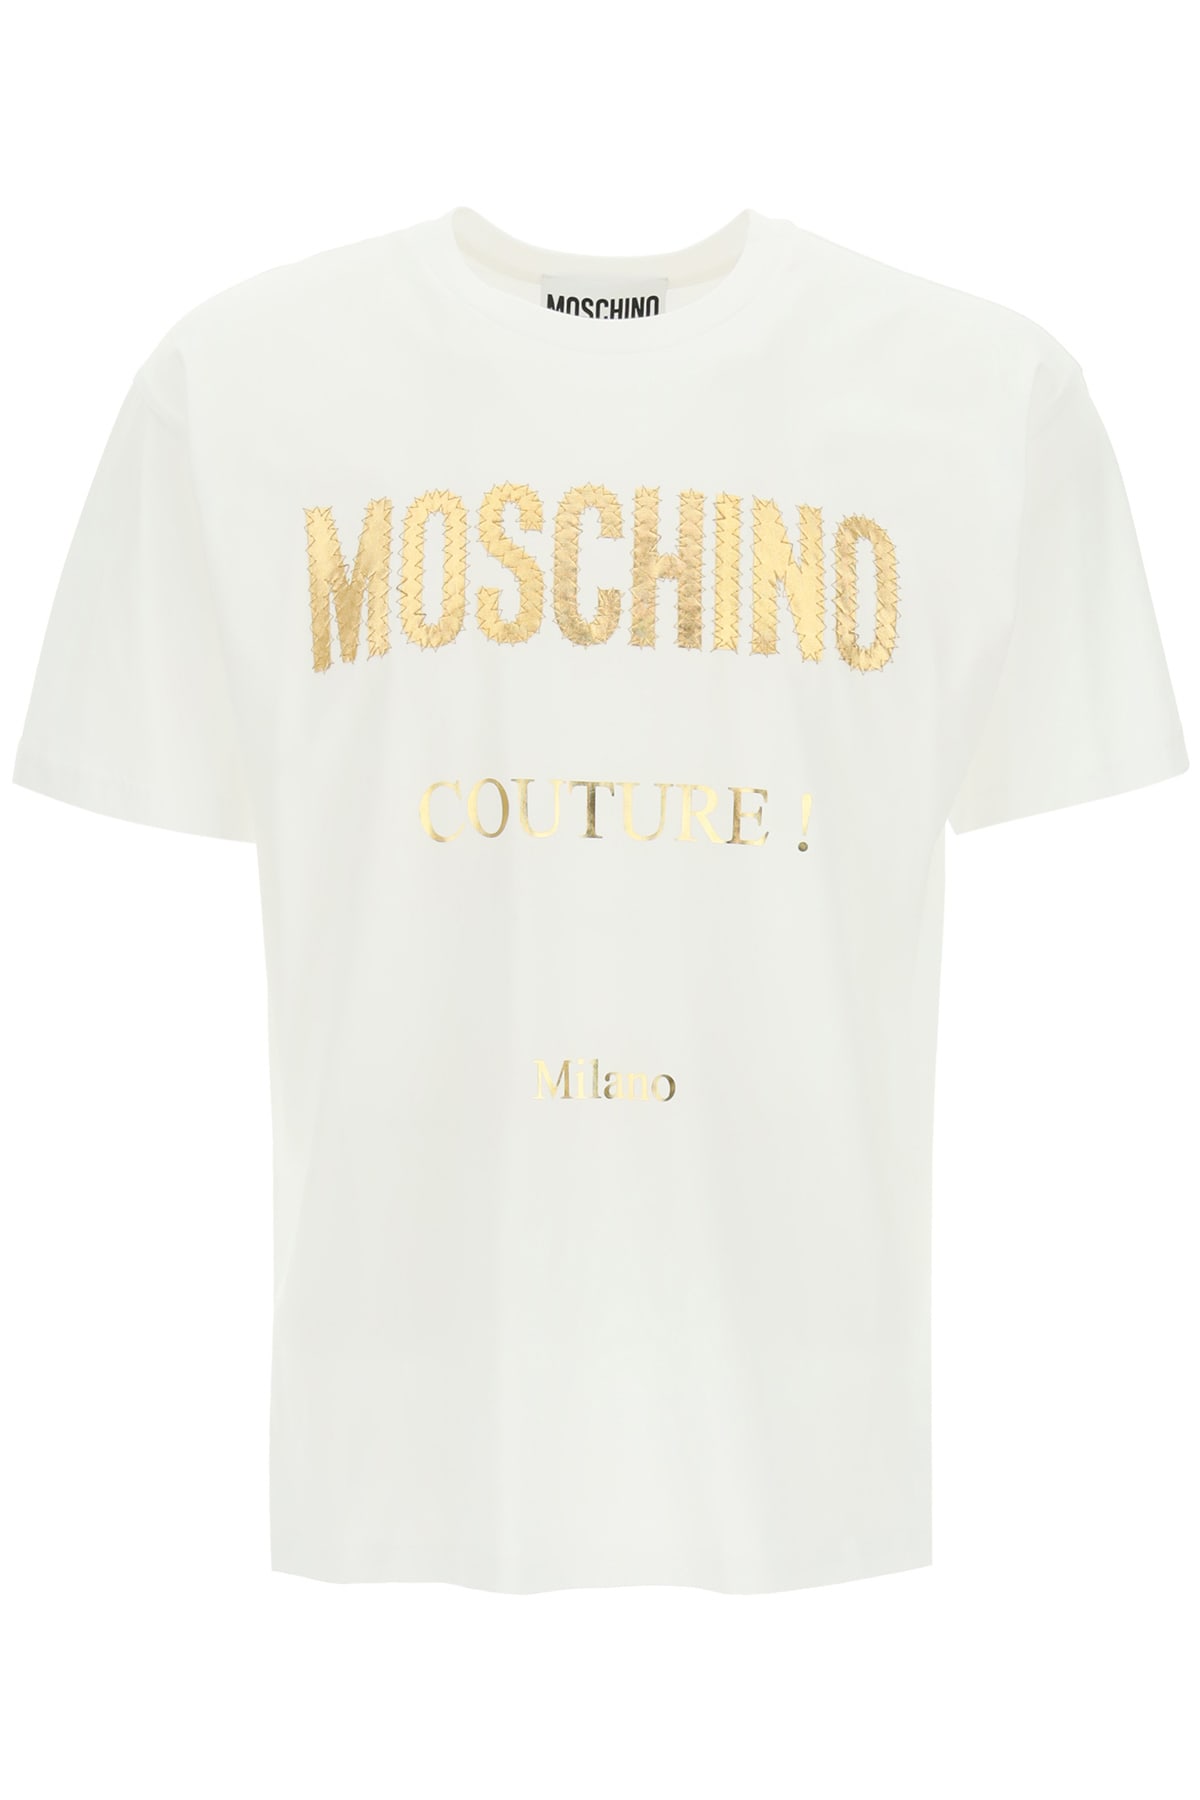 Moschino Golden Logo T-shirt